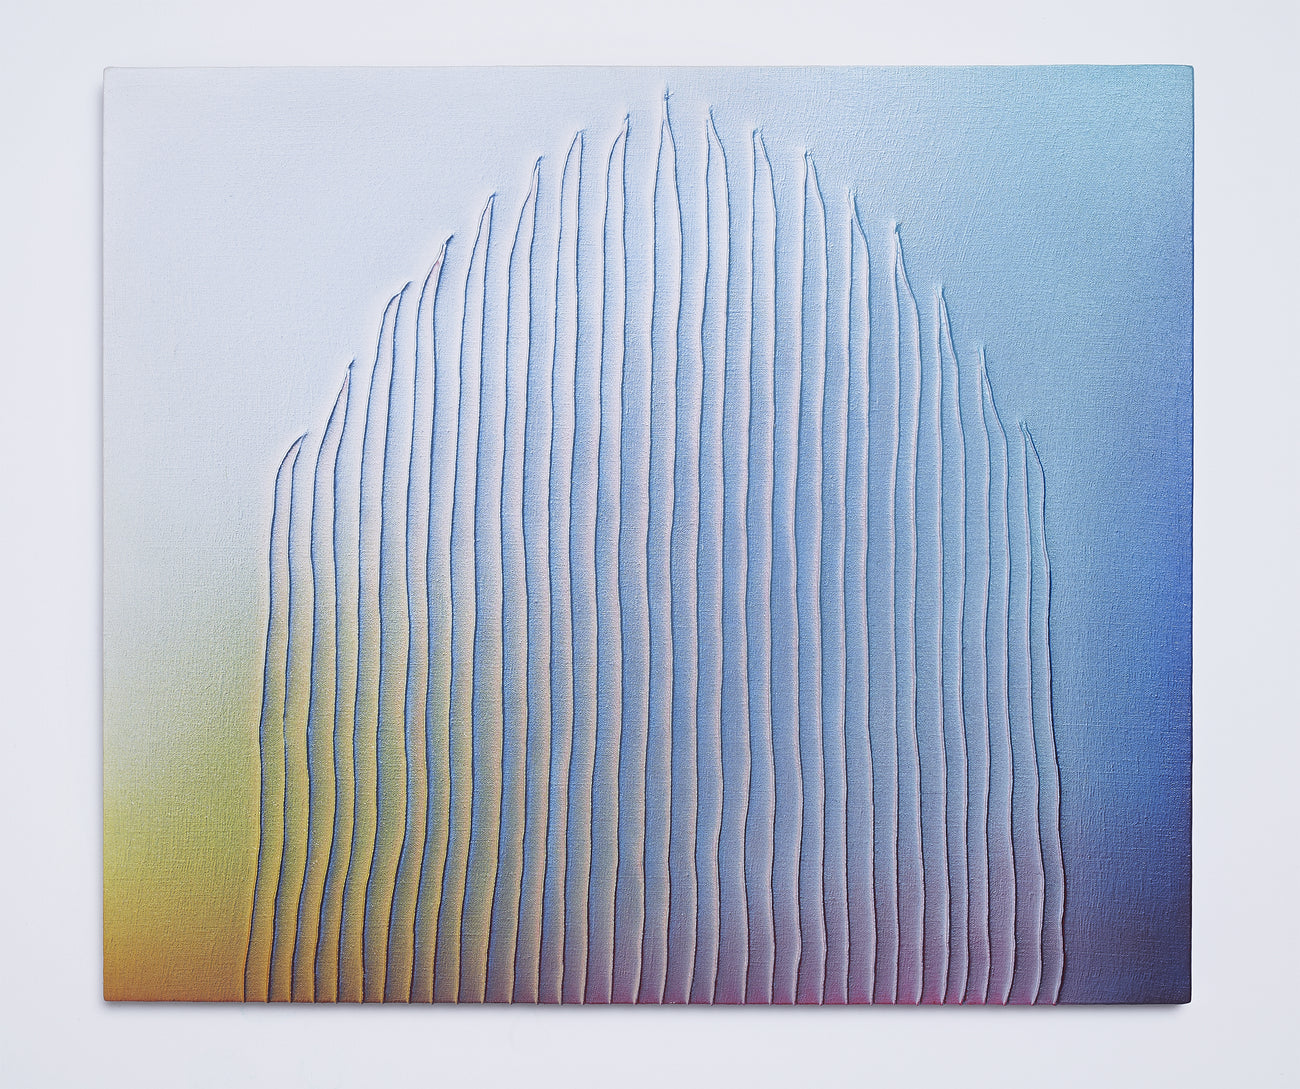 无标题 170371, TSUYOSHI MAEKAWA, 2000Acrylic on sewn burlap45.5 × 53.0cm